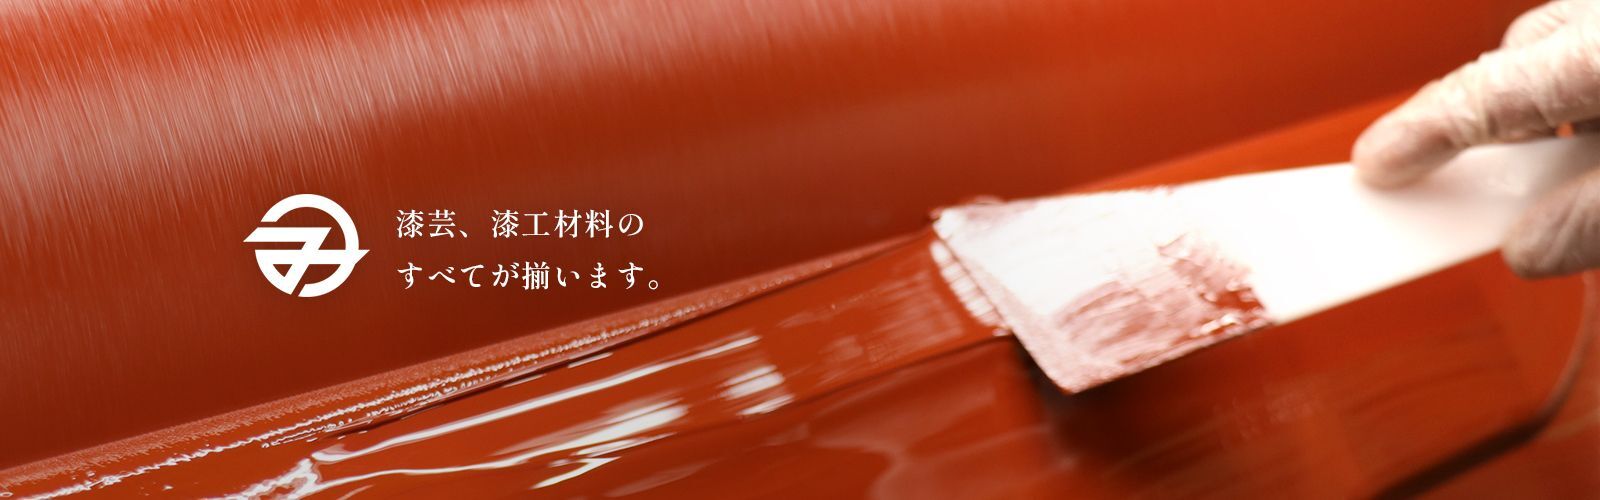 漆関連商品常時2000点以上の品揃え！ 日本一の漆屋『箕輪漆行』